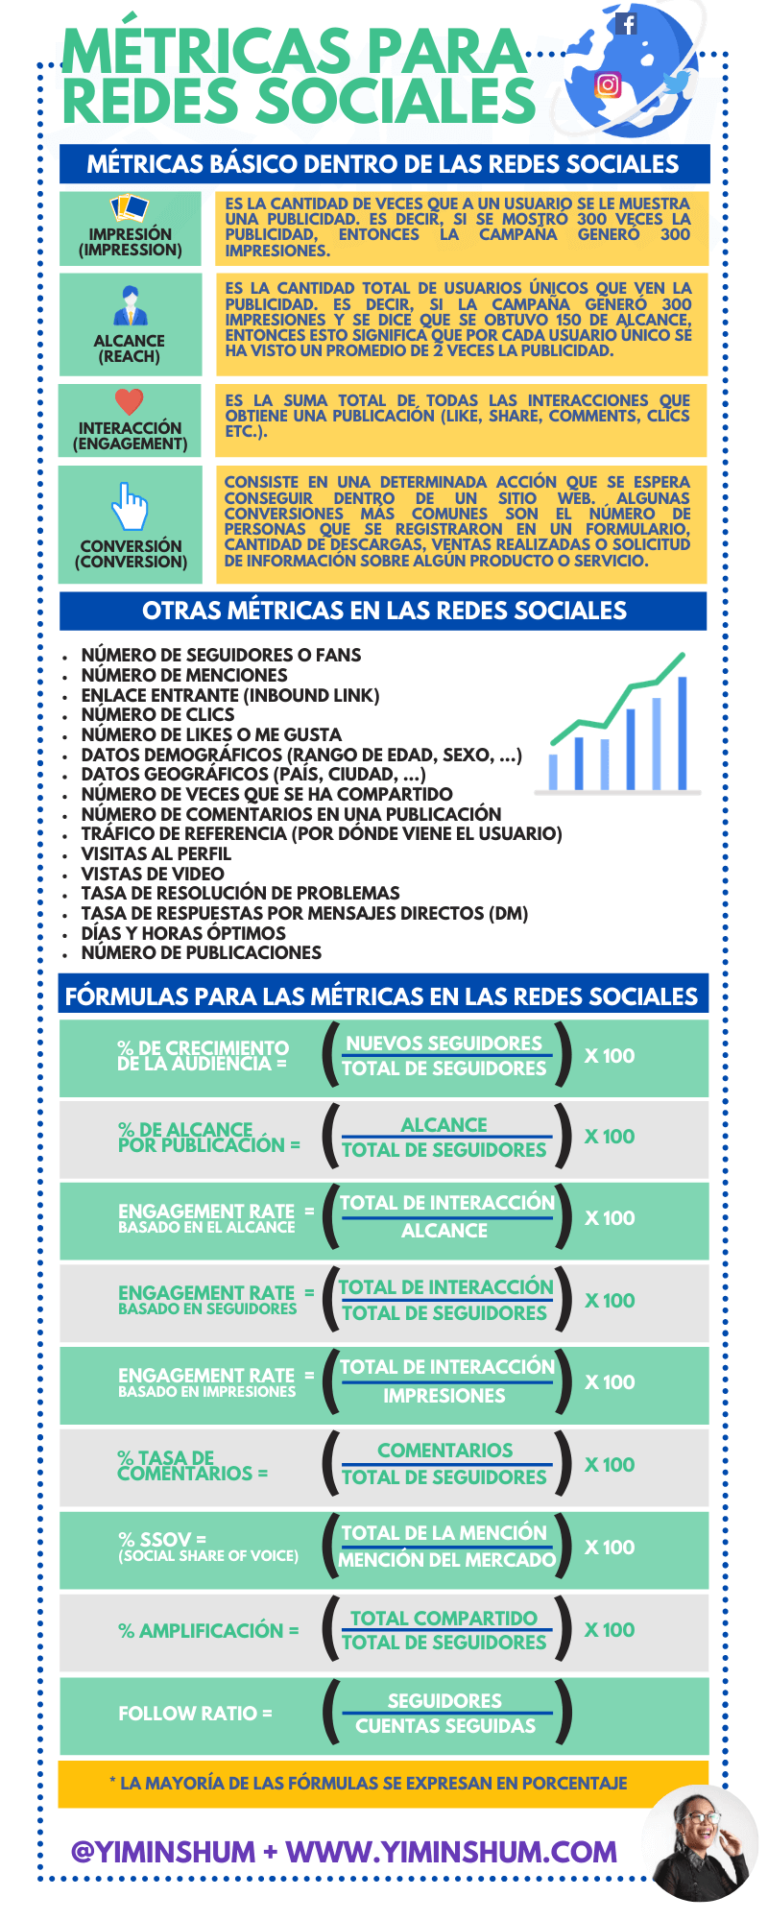 Métricas para Redes Sociales #infografia #infographic #socialmedia